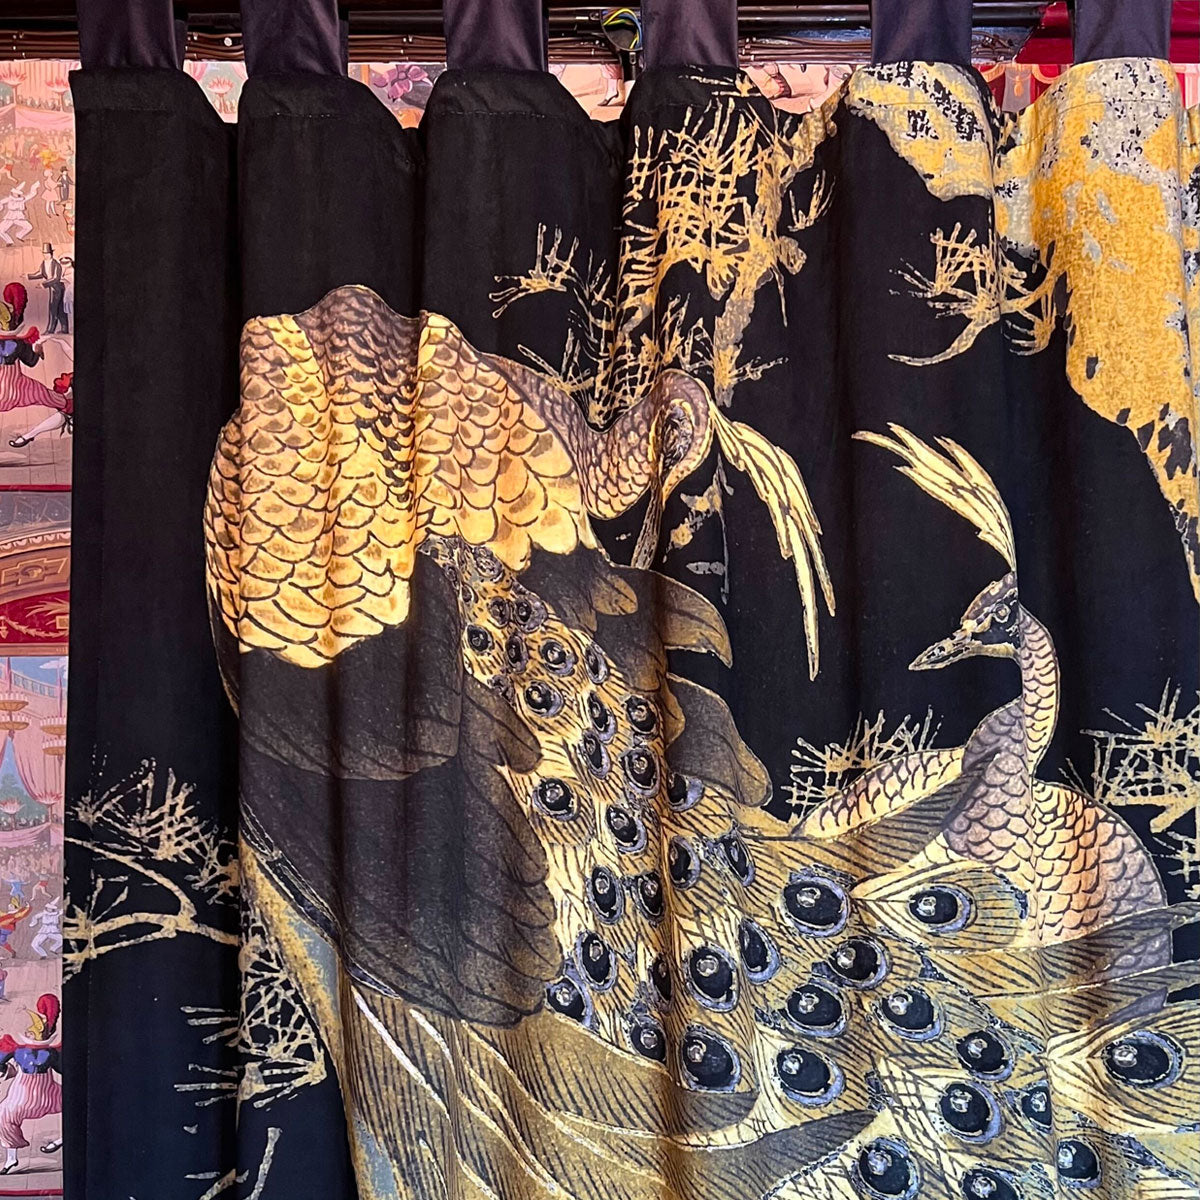 Peacock Black Printed Velvet Panel Curtain